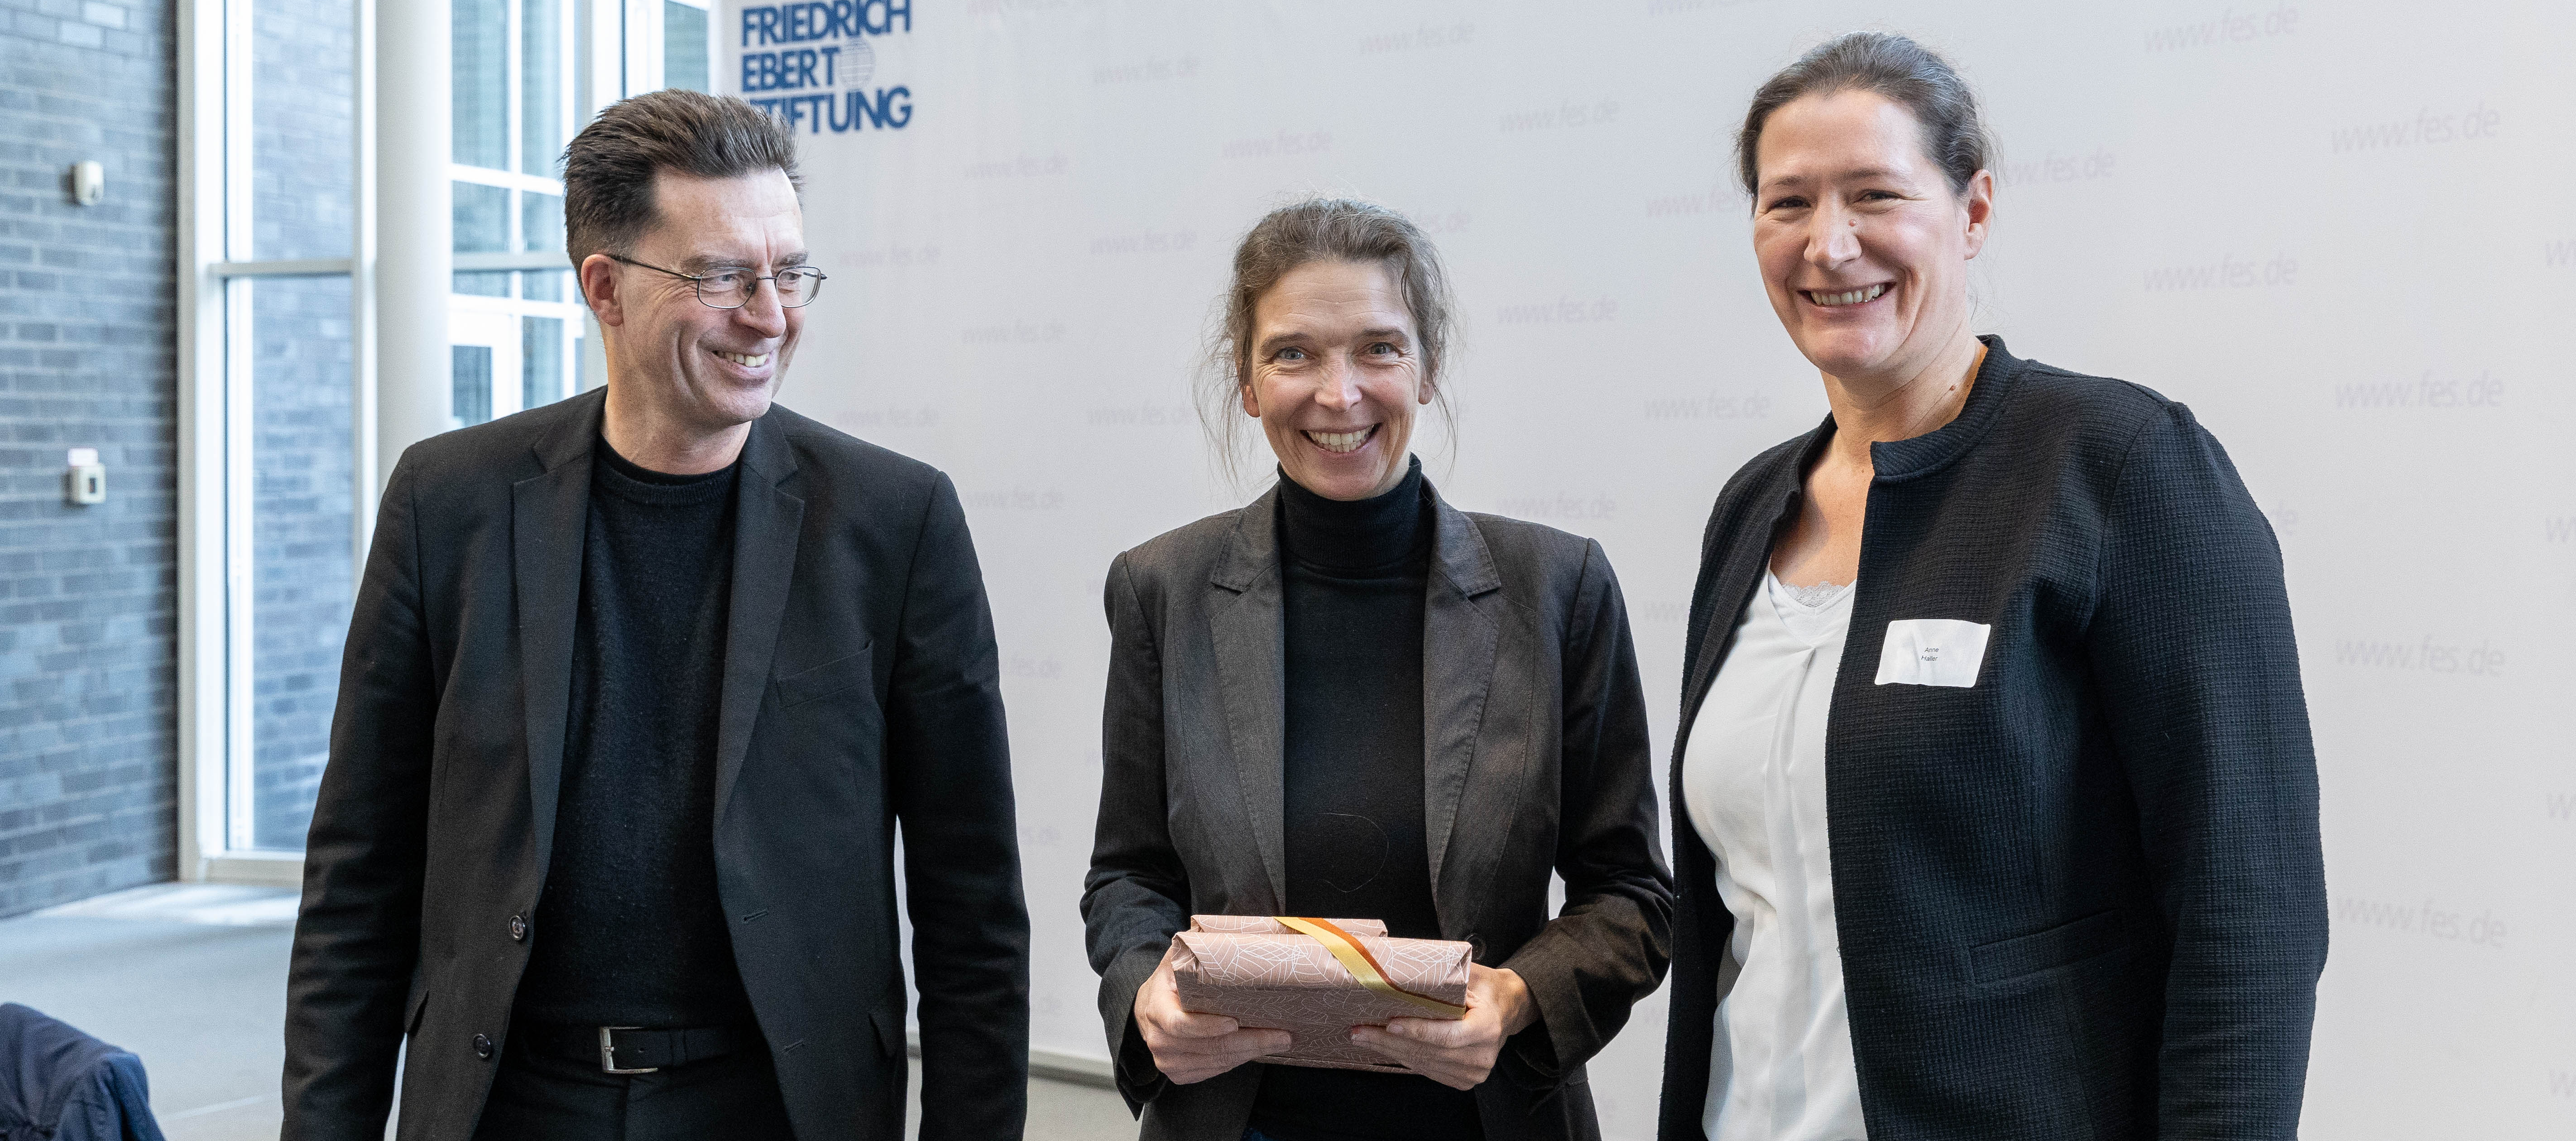 Serge Embacher, Svenja Stadler mit Geschenk, Anne Haller